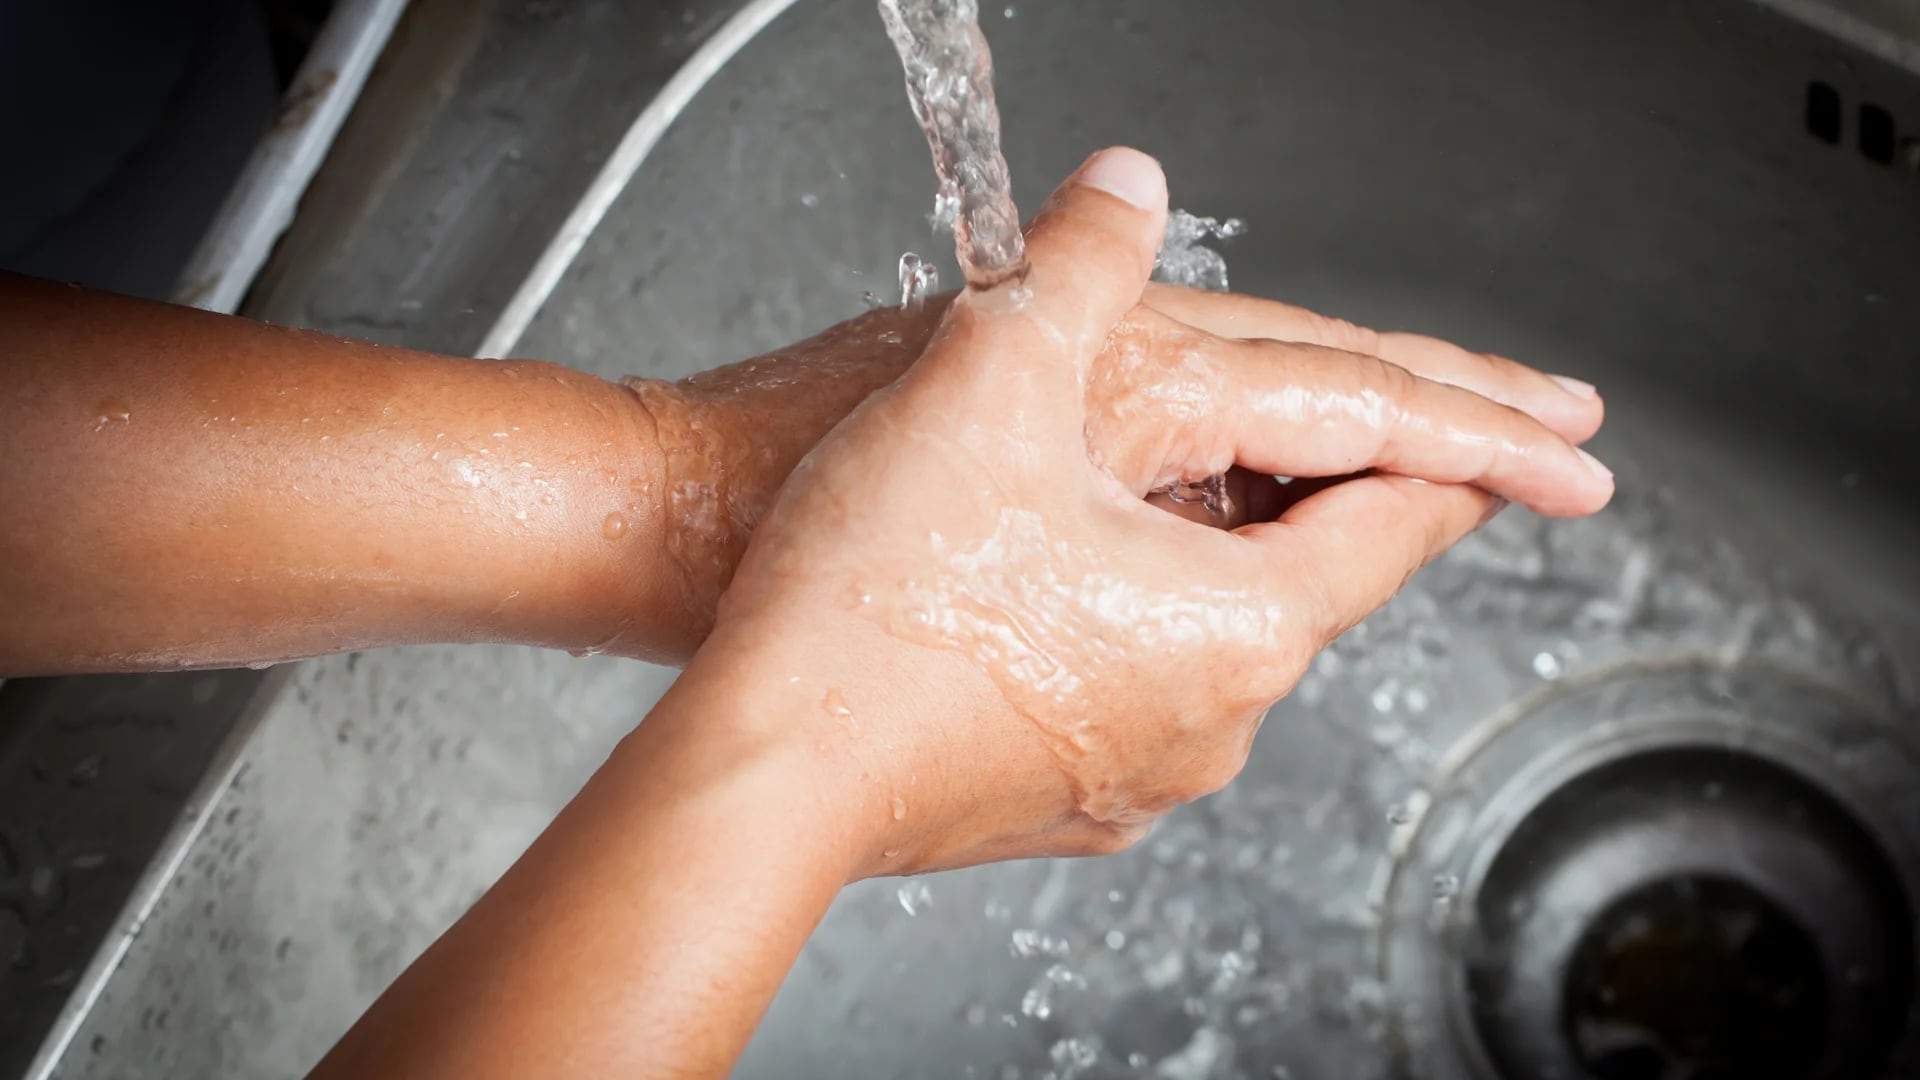 Colocar menos o más jabón no mejora el lavado en las manos (iStock)